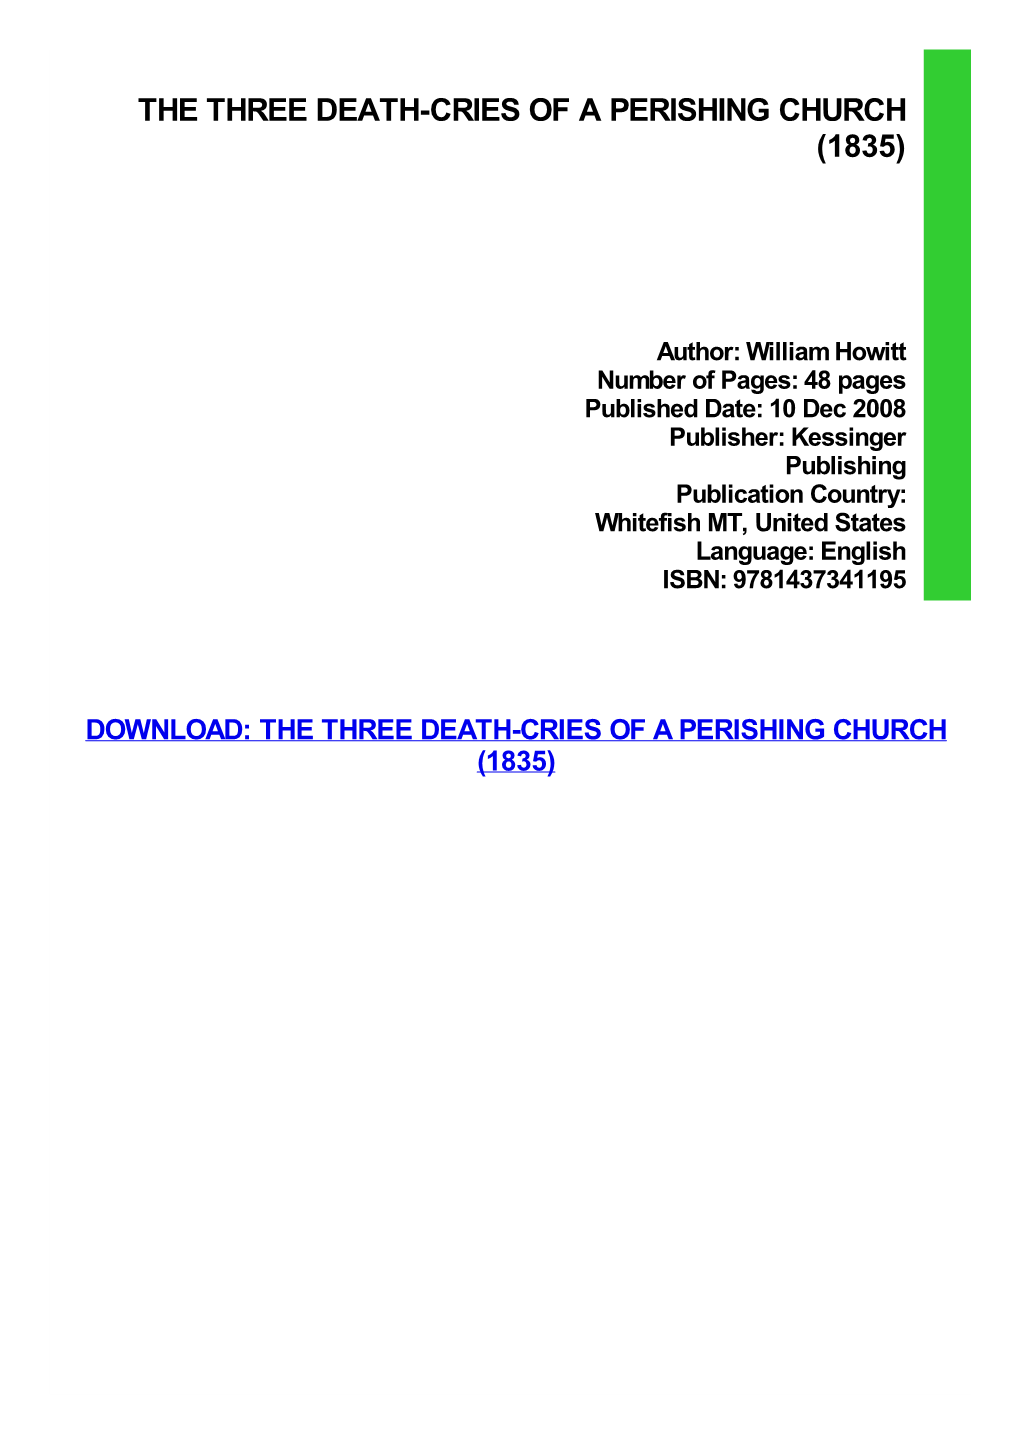 The Three Death-Cries of a Perishing Church (1835)